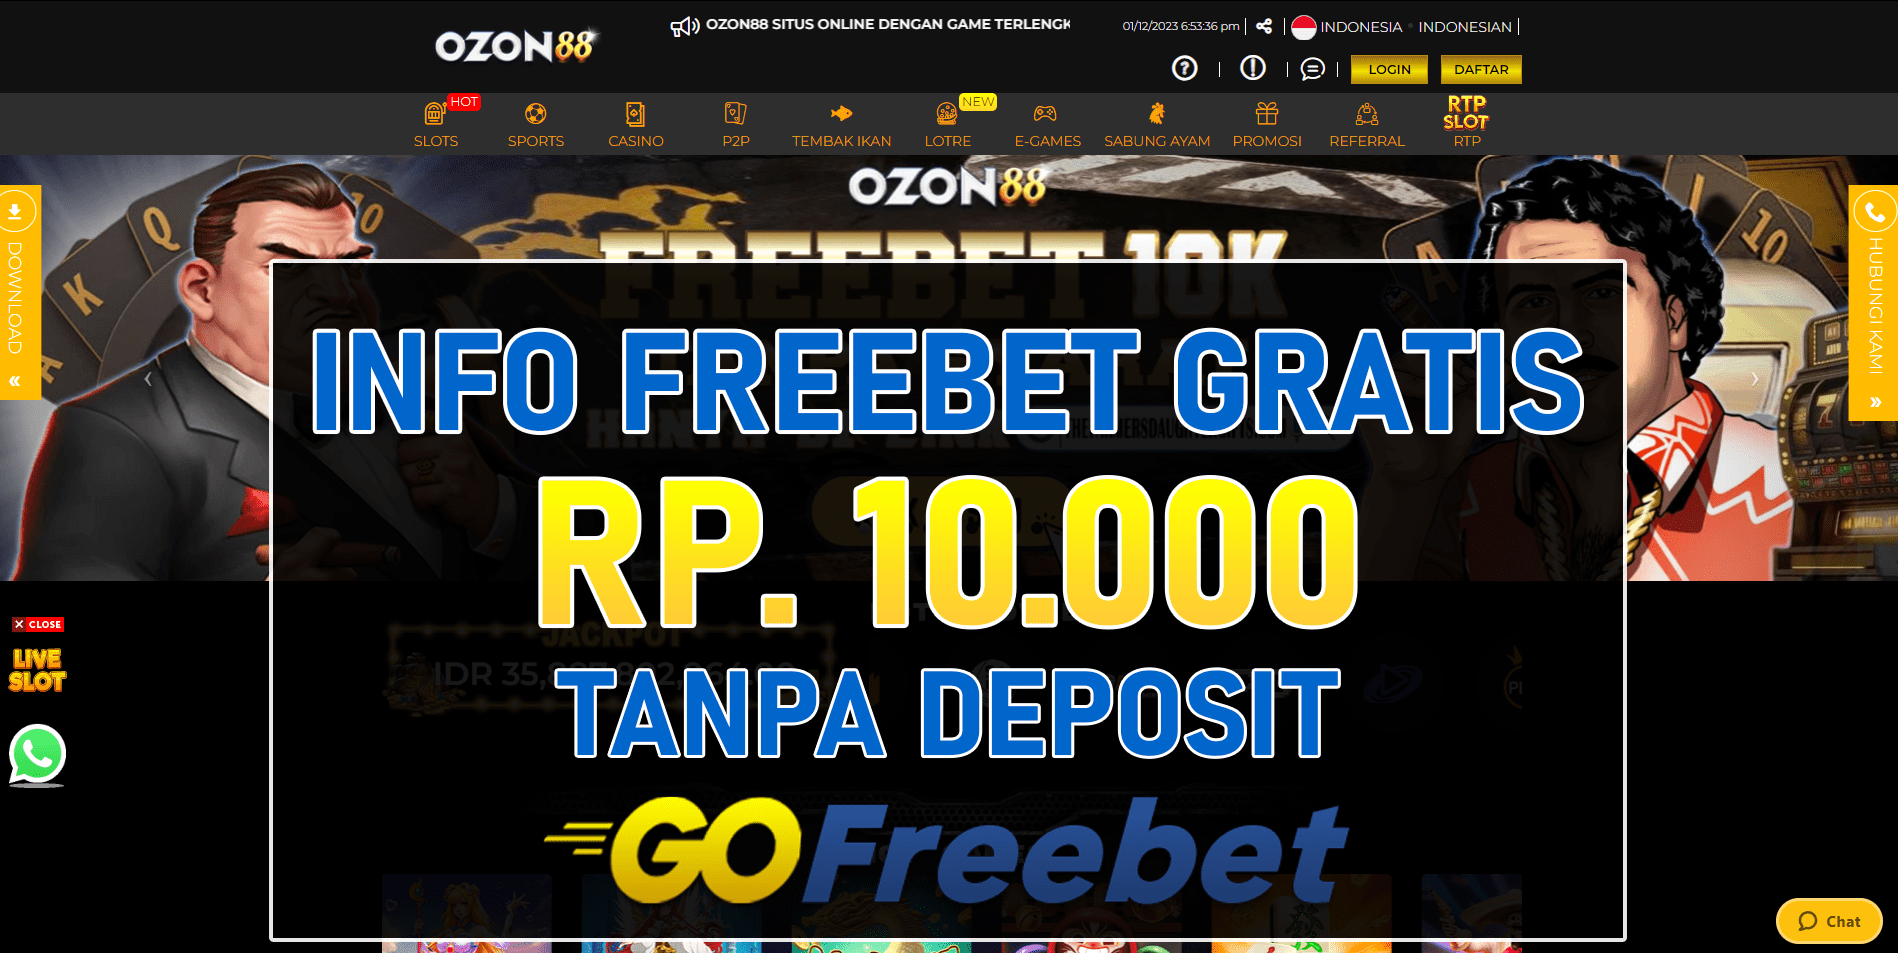 Ozon88 Freebet Gratis Rp 10.000 Tanpa Deposit